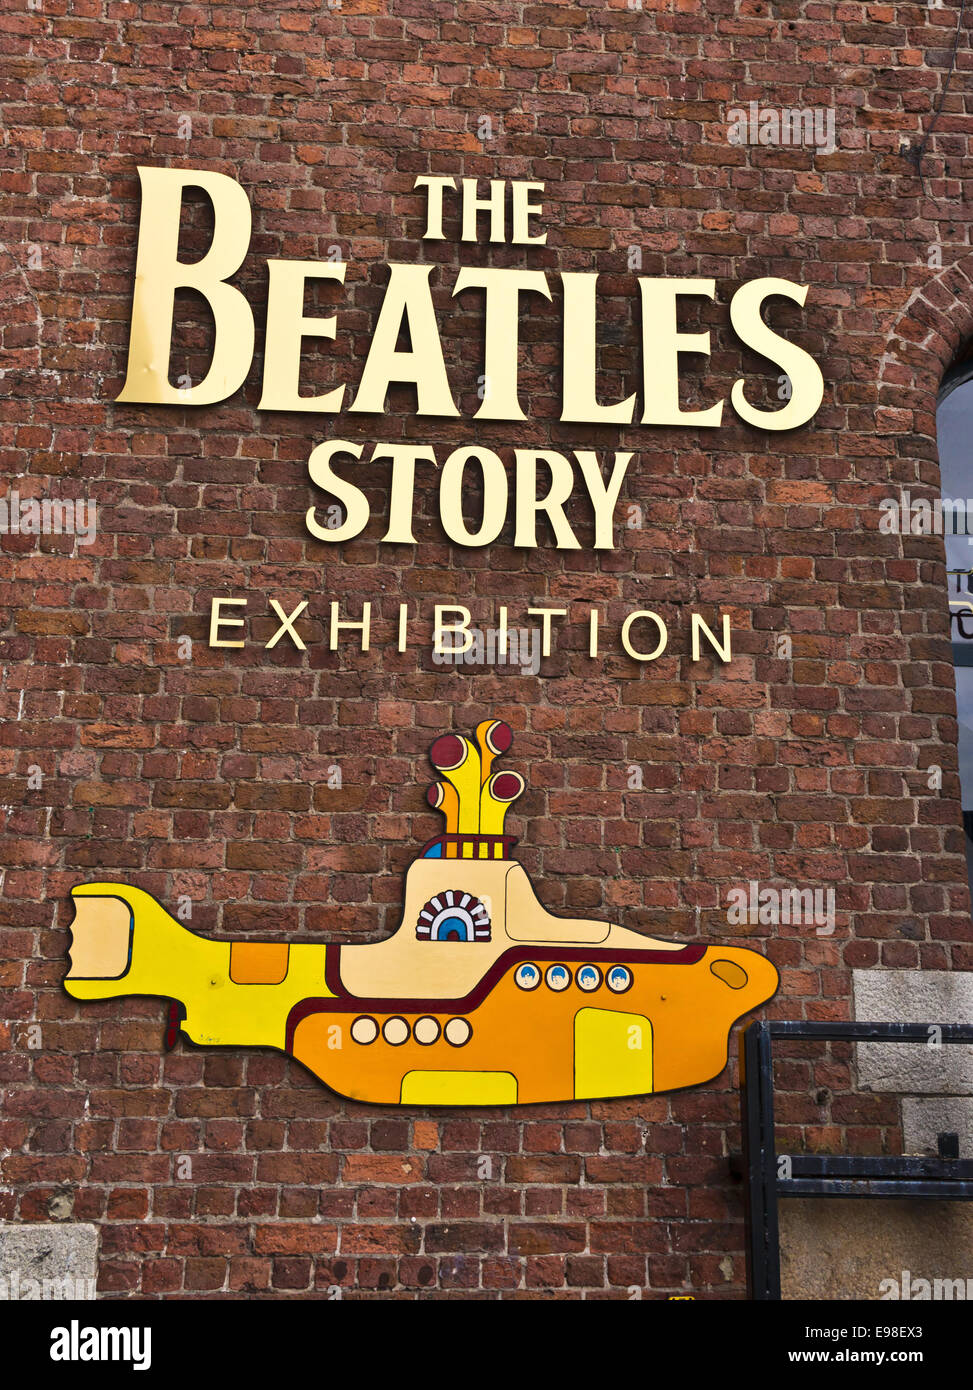 Il Beatles Story è una attrazione turistica dedicata agli anni sessanta del gruppo rock The Beatles in Liverpool. Foto Stock